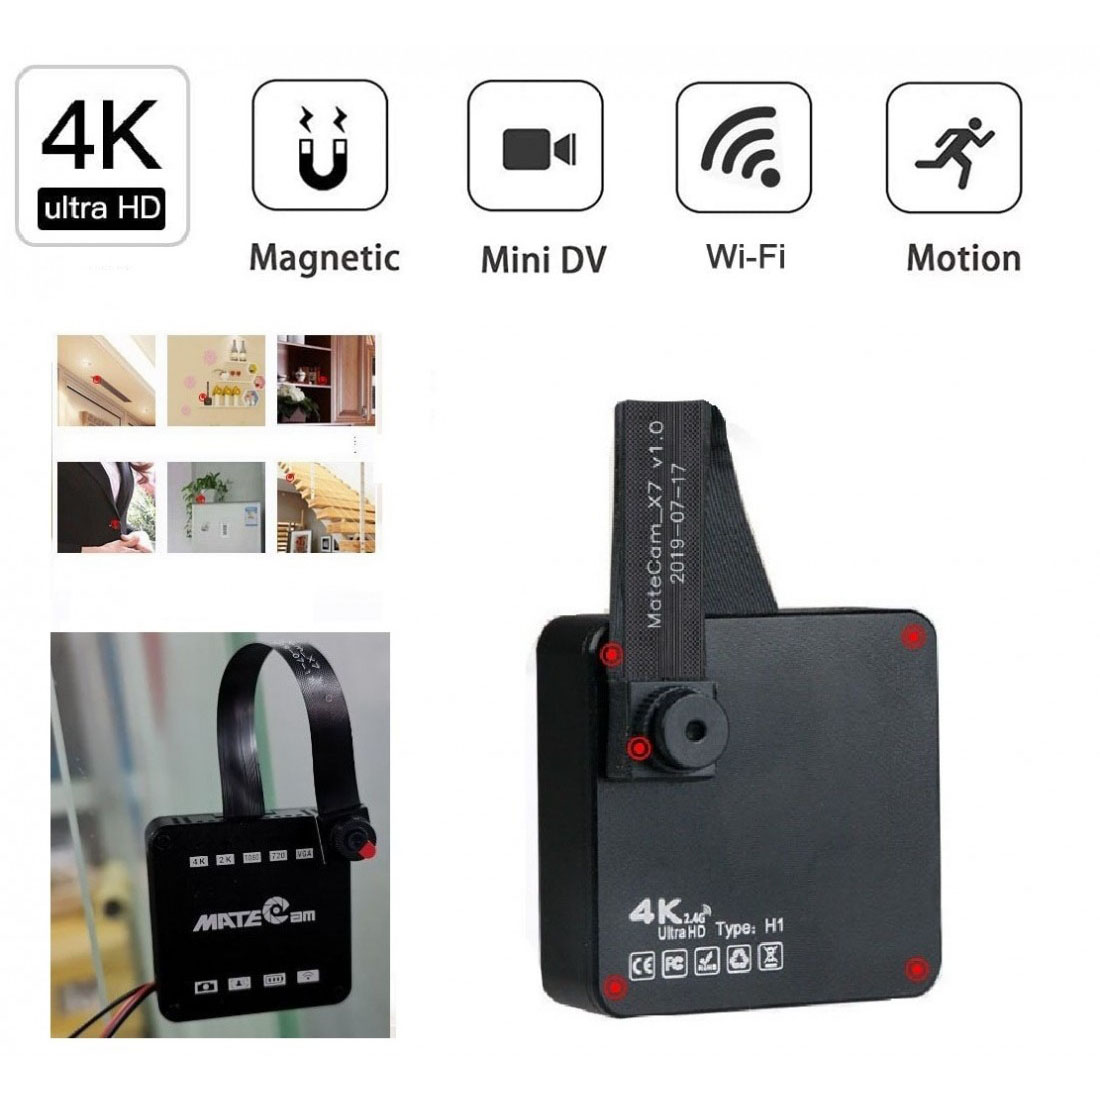 4K Unltra HD kémkamera, vezeték nélküli rejtett kamera mágnessel, mini hordozható otthoni biztonsági akkumulátorral működő rejtett dadus kamera, kis videórögzítő / mozgással aktiválható